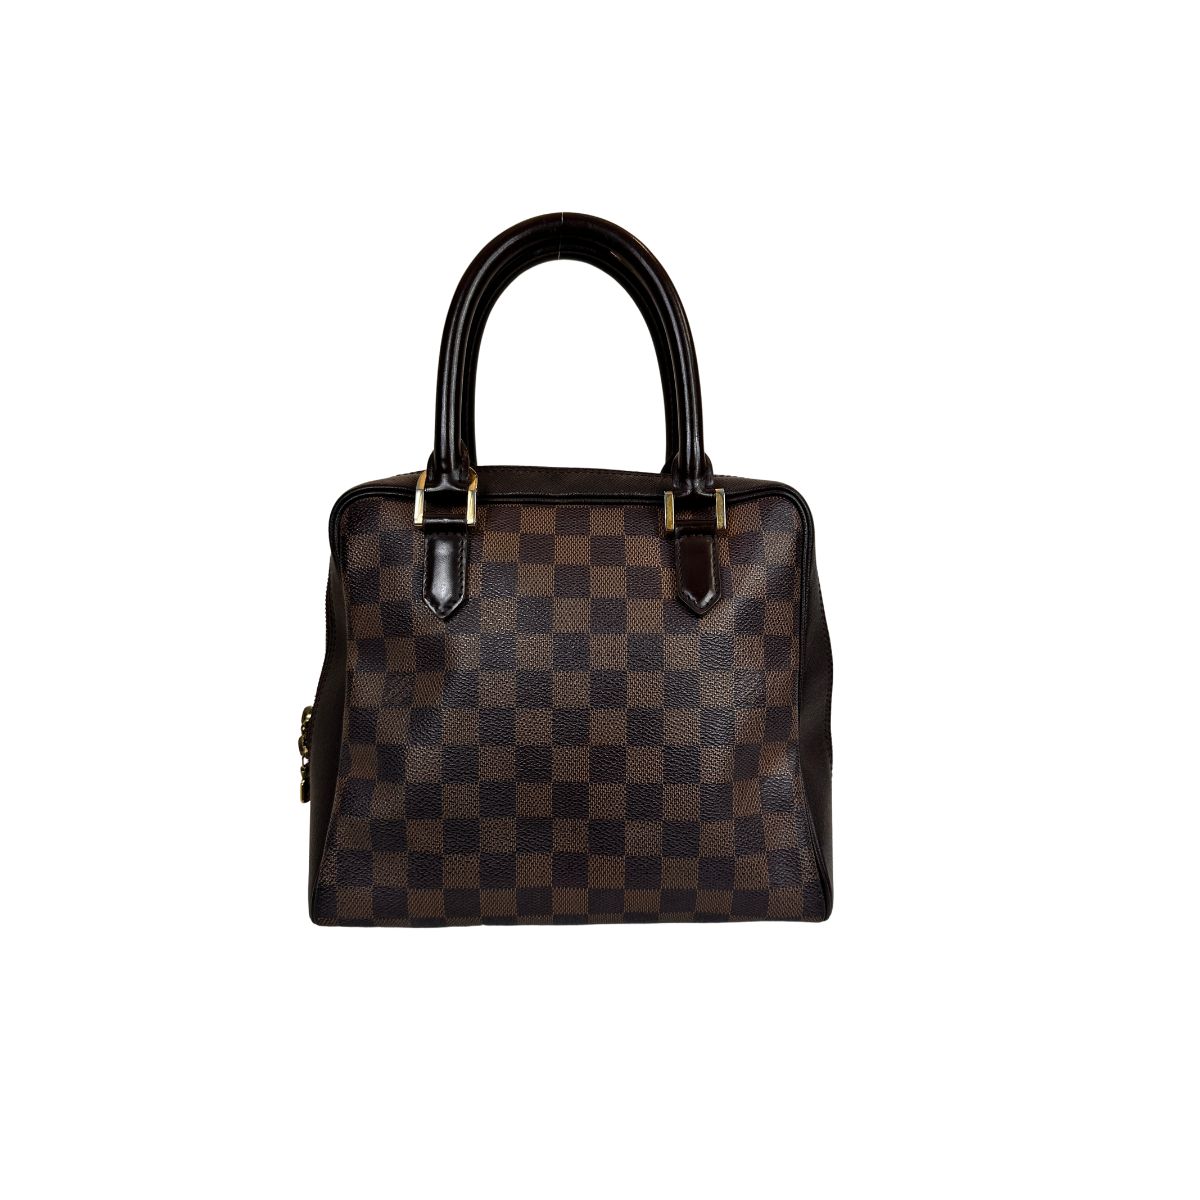 Vintage Louis Vuitton Duffle Bag  RIGHT  PROPER